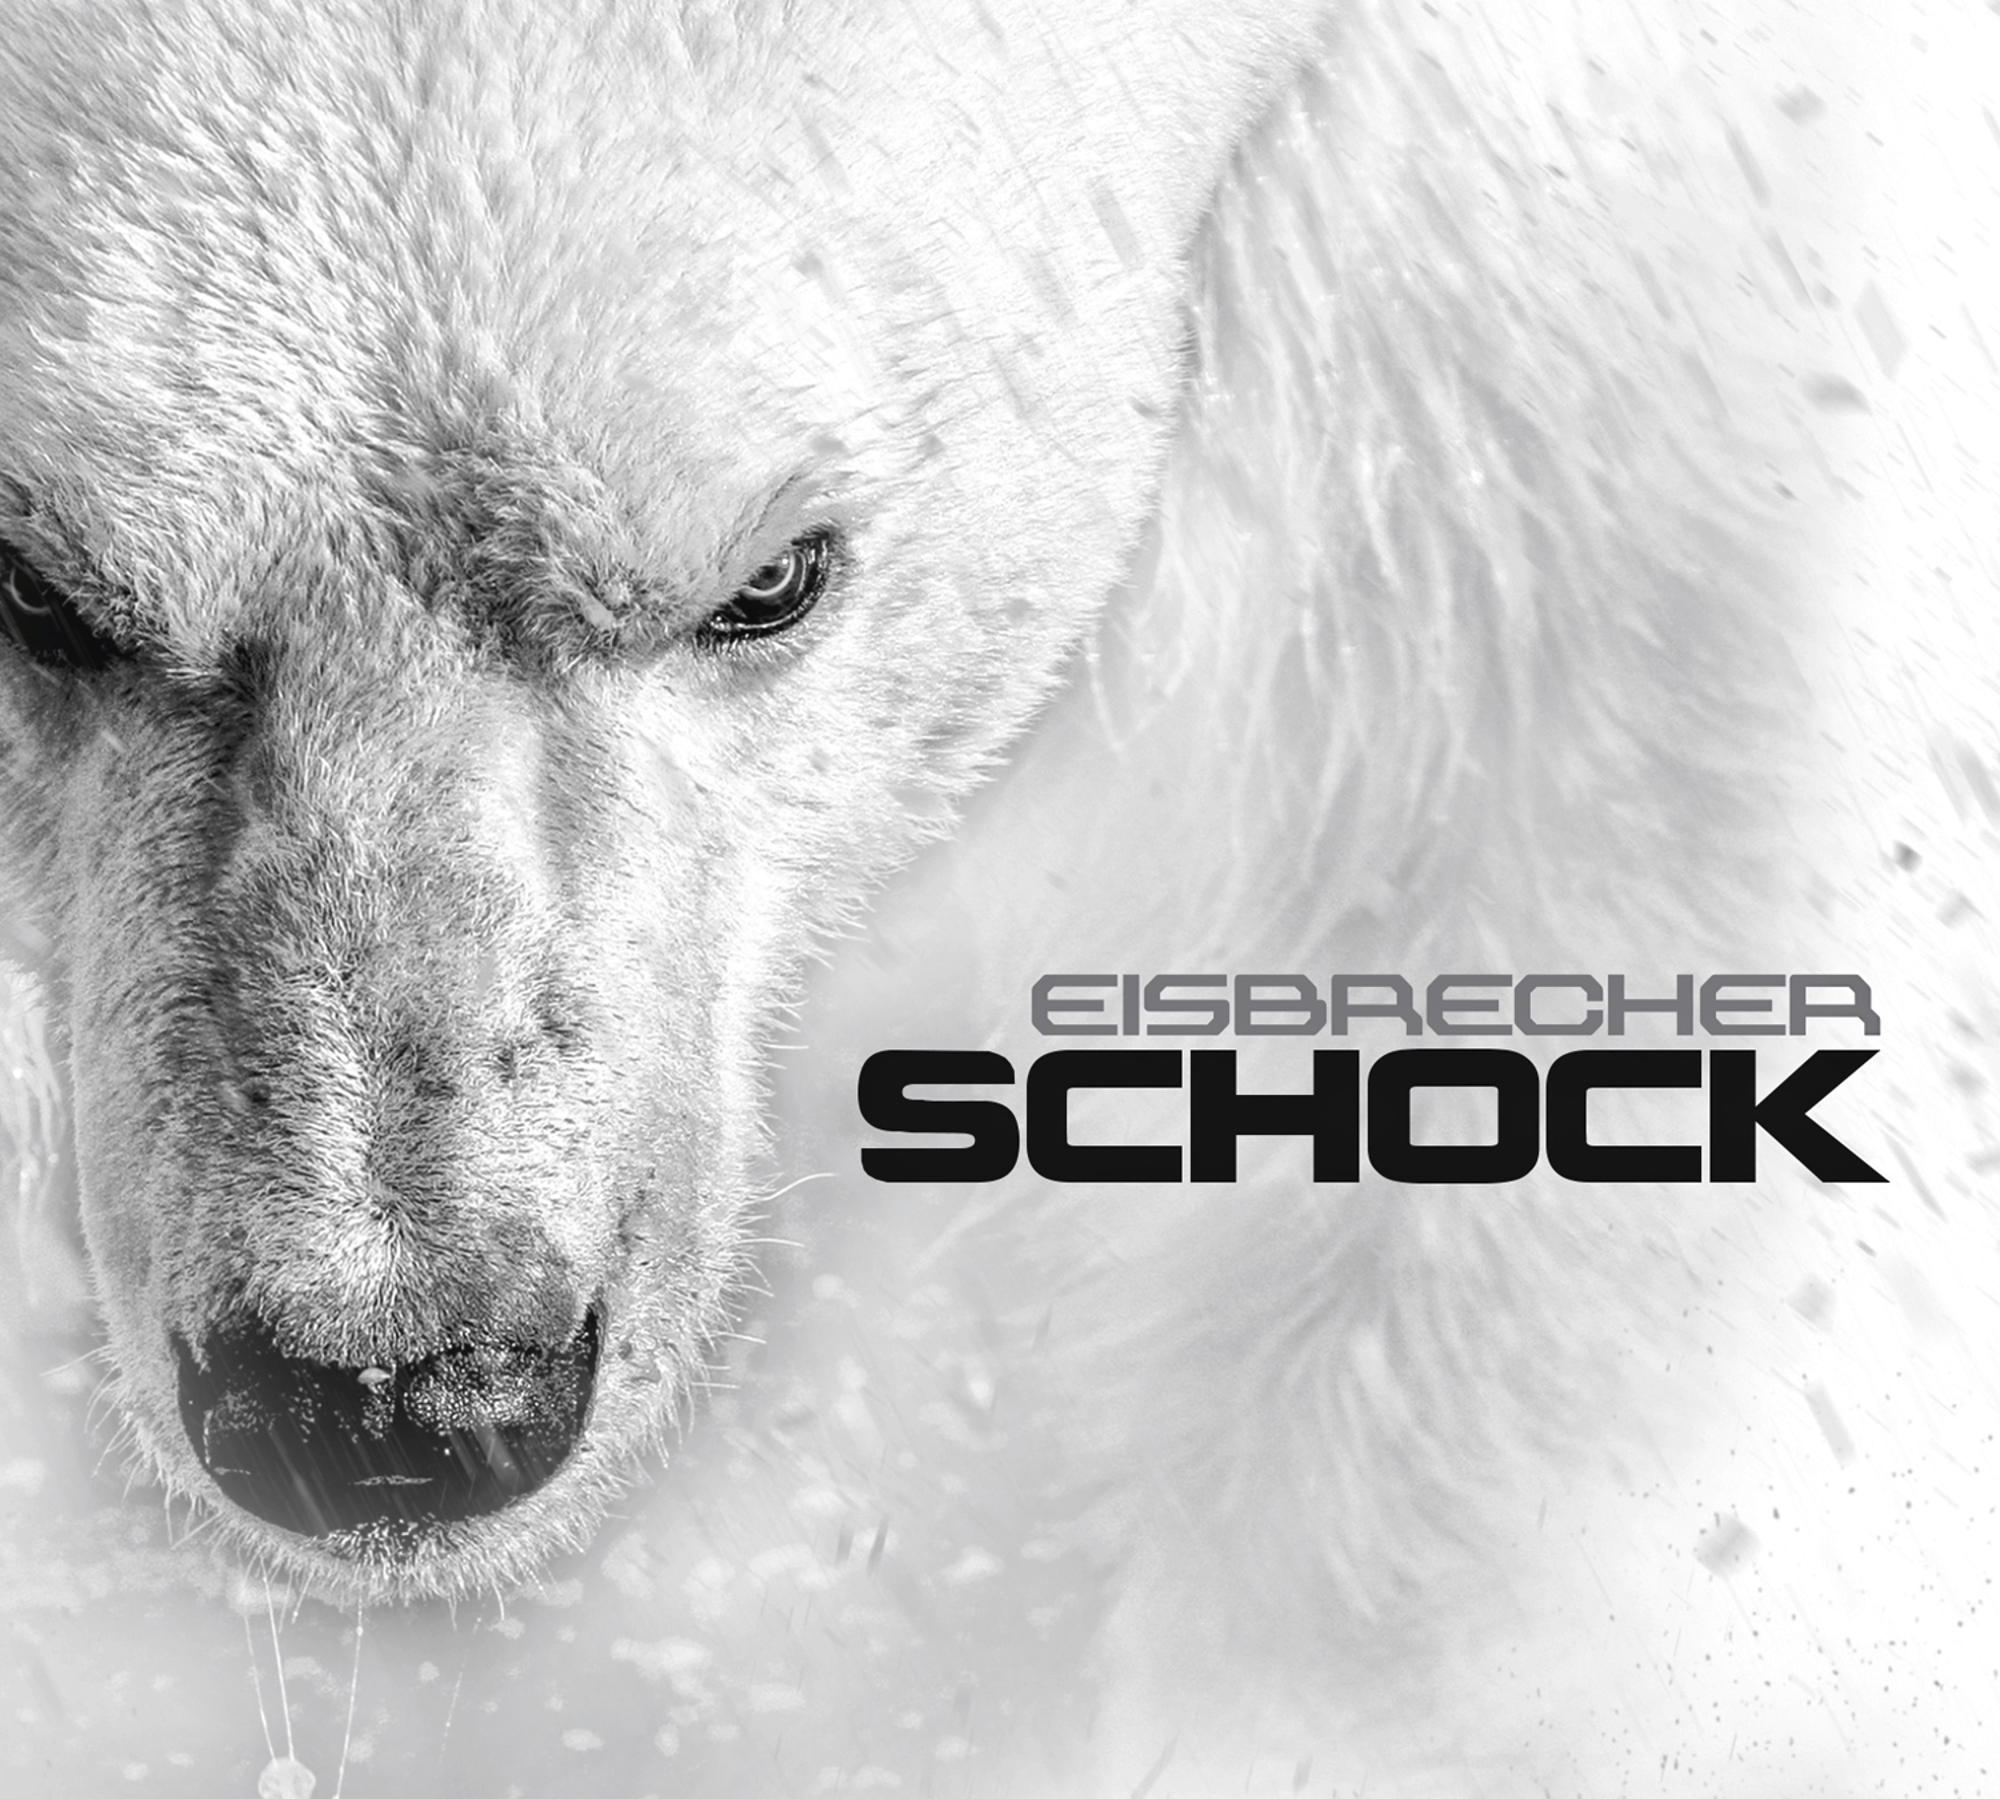 Schock - Eisbrecher - (CD)